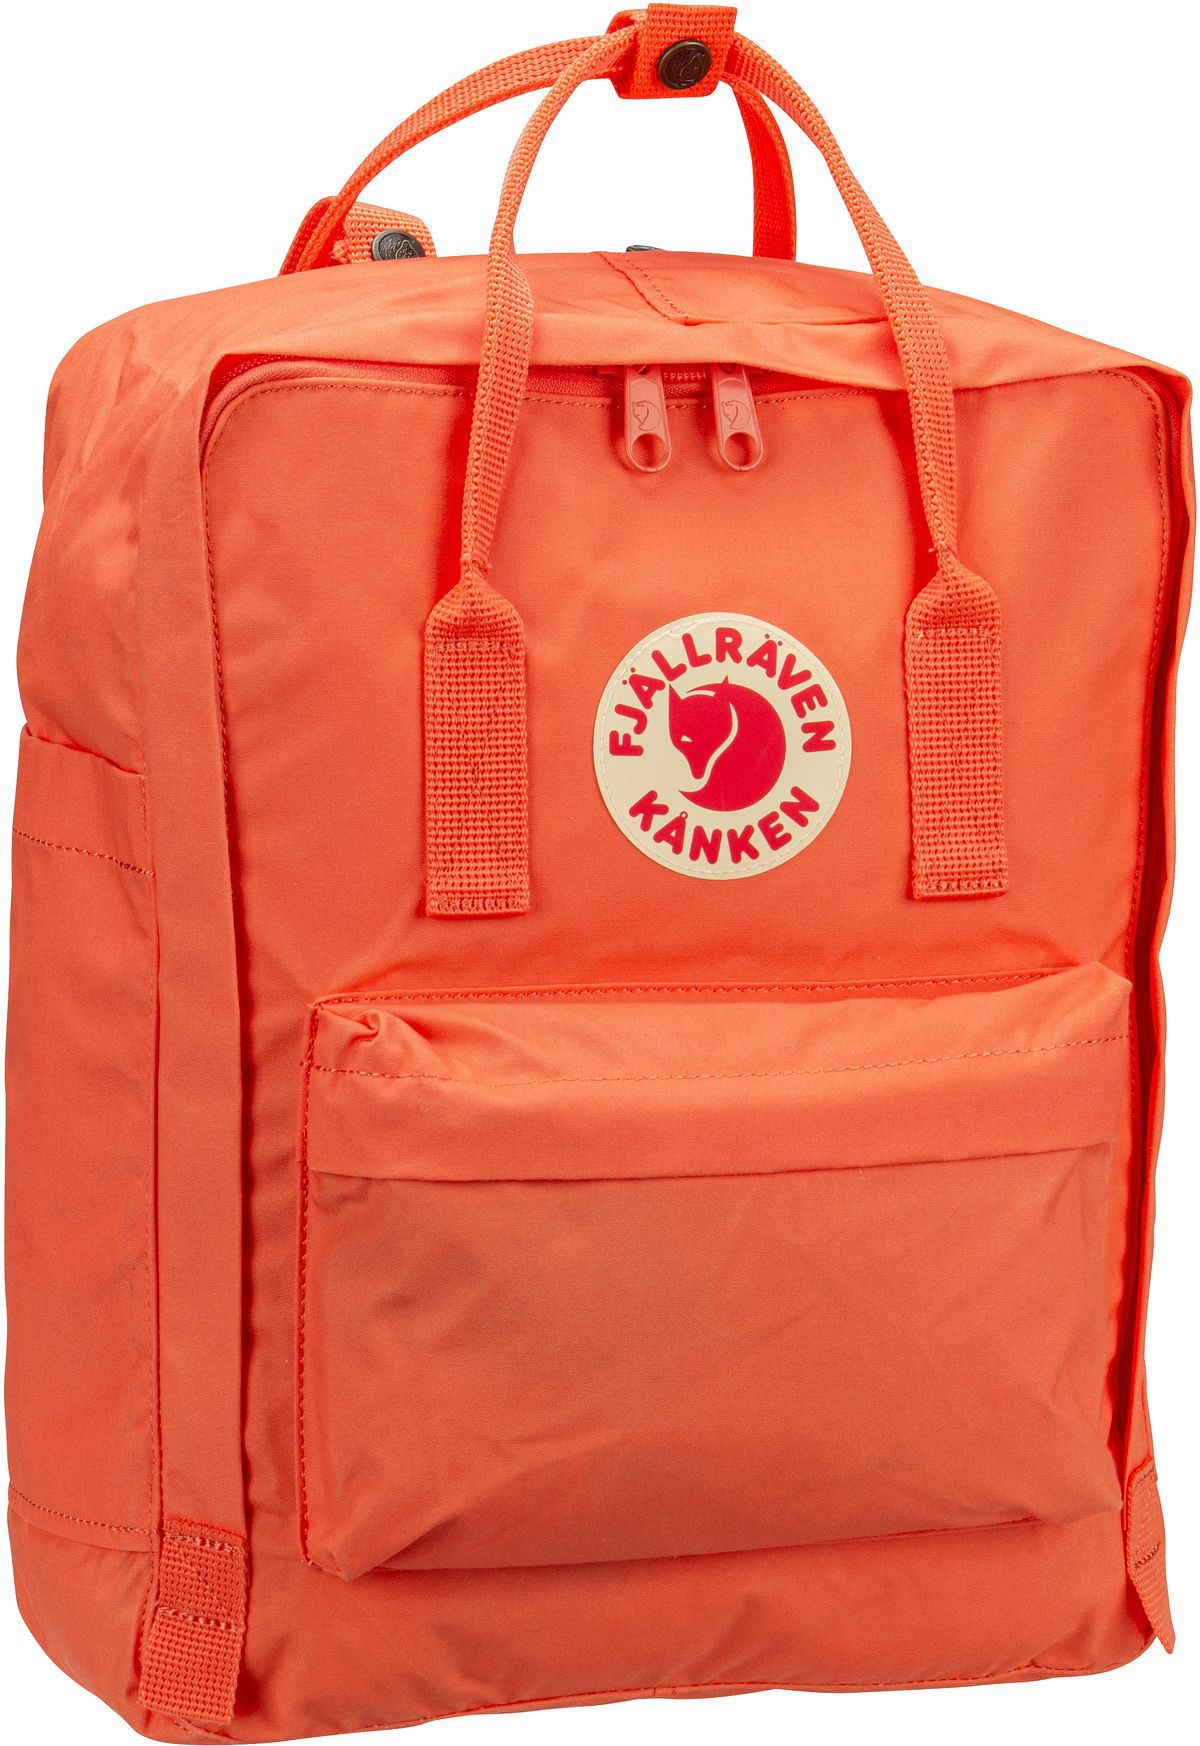 Fjällräven Kanken  in Orange (16 Liter), Rucksack / Backpack